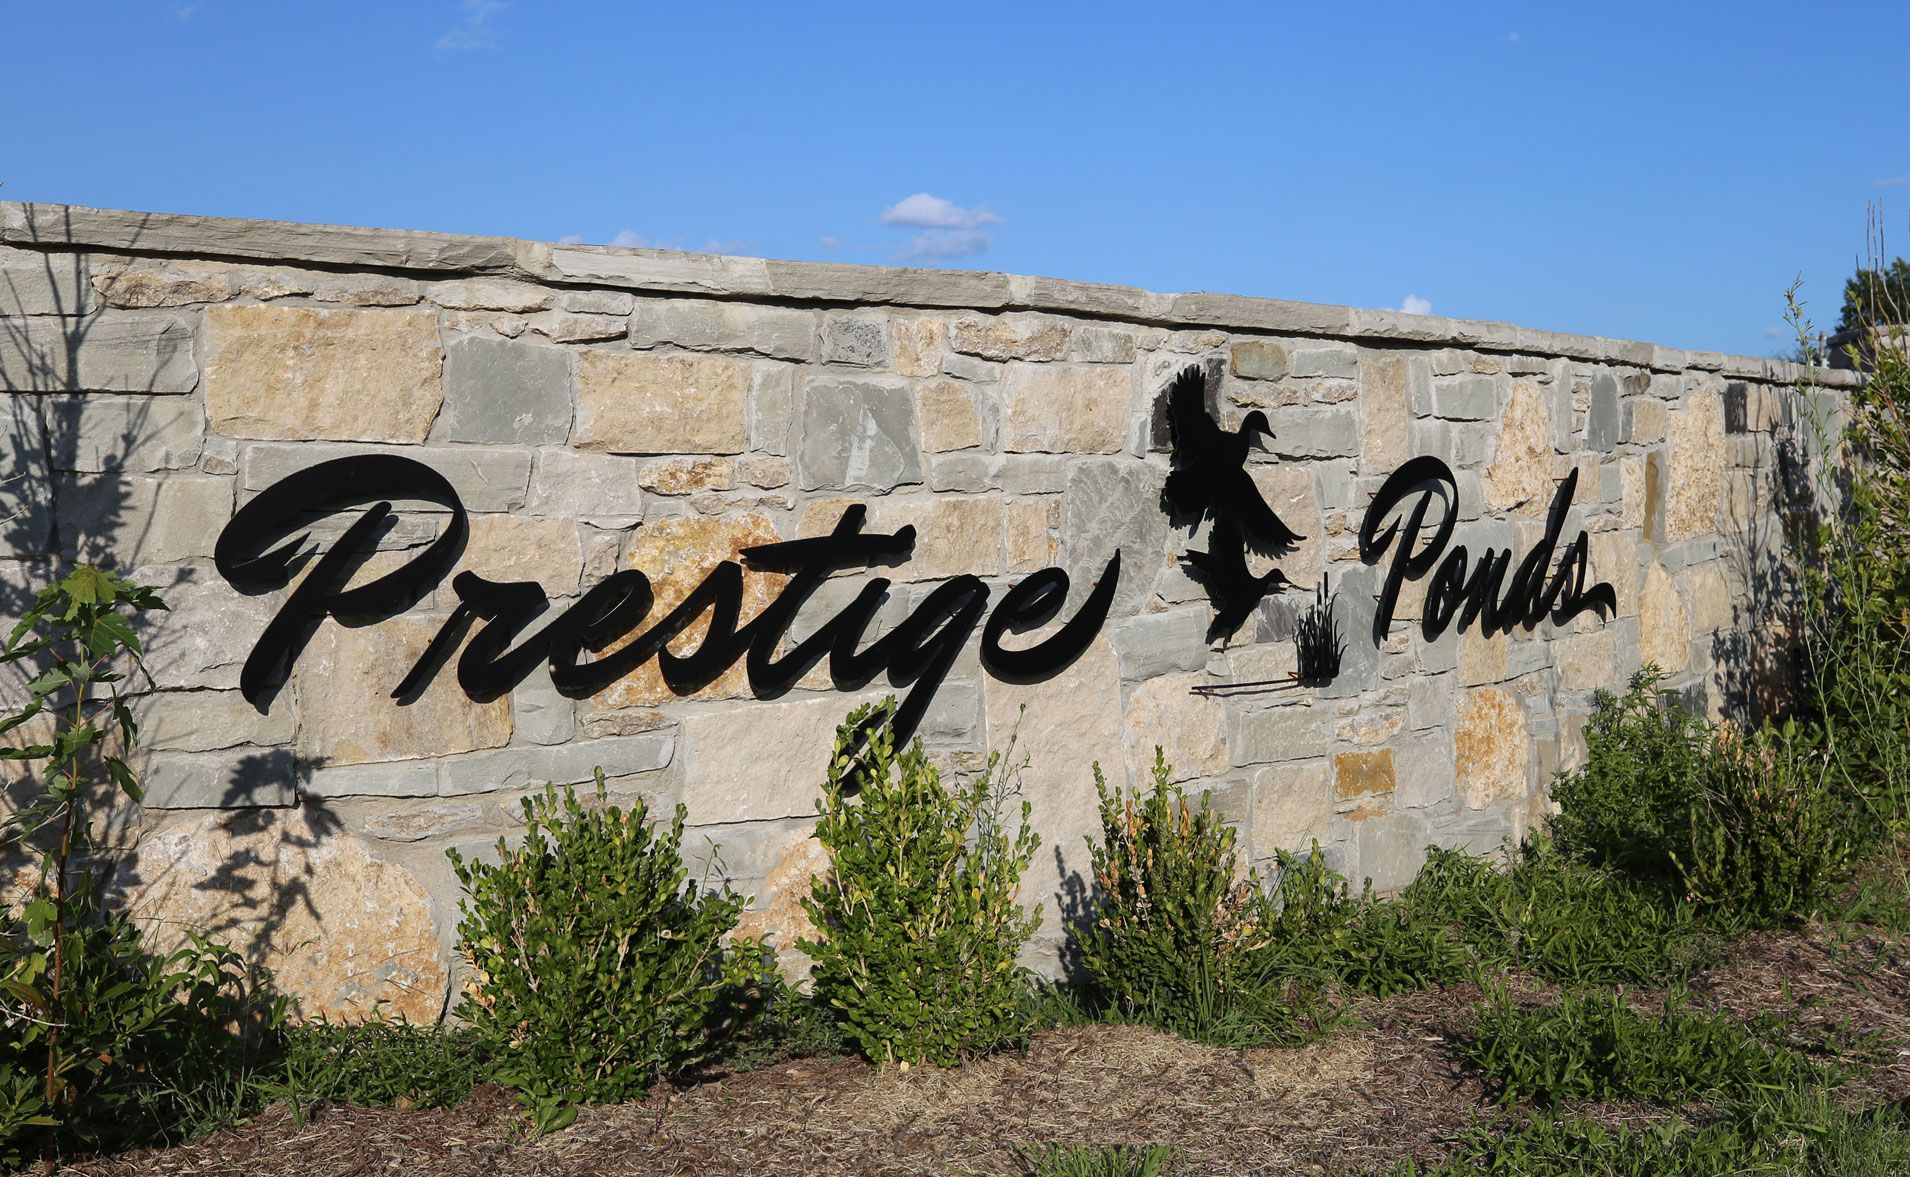 Prestige Ponds,74055